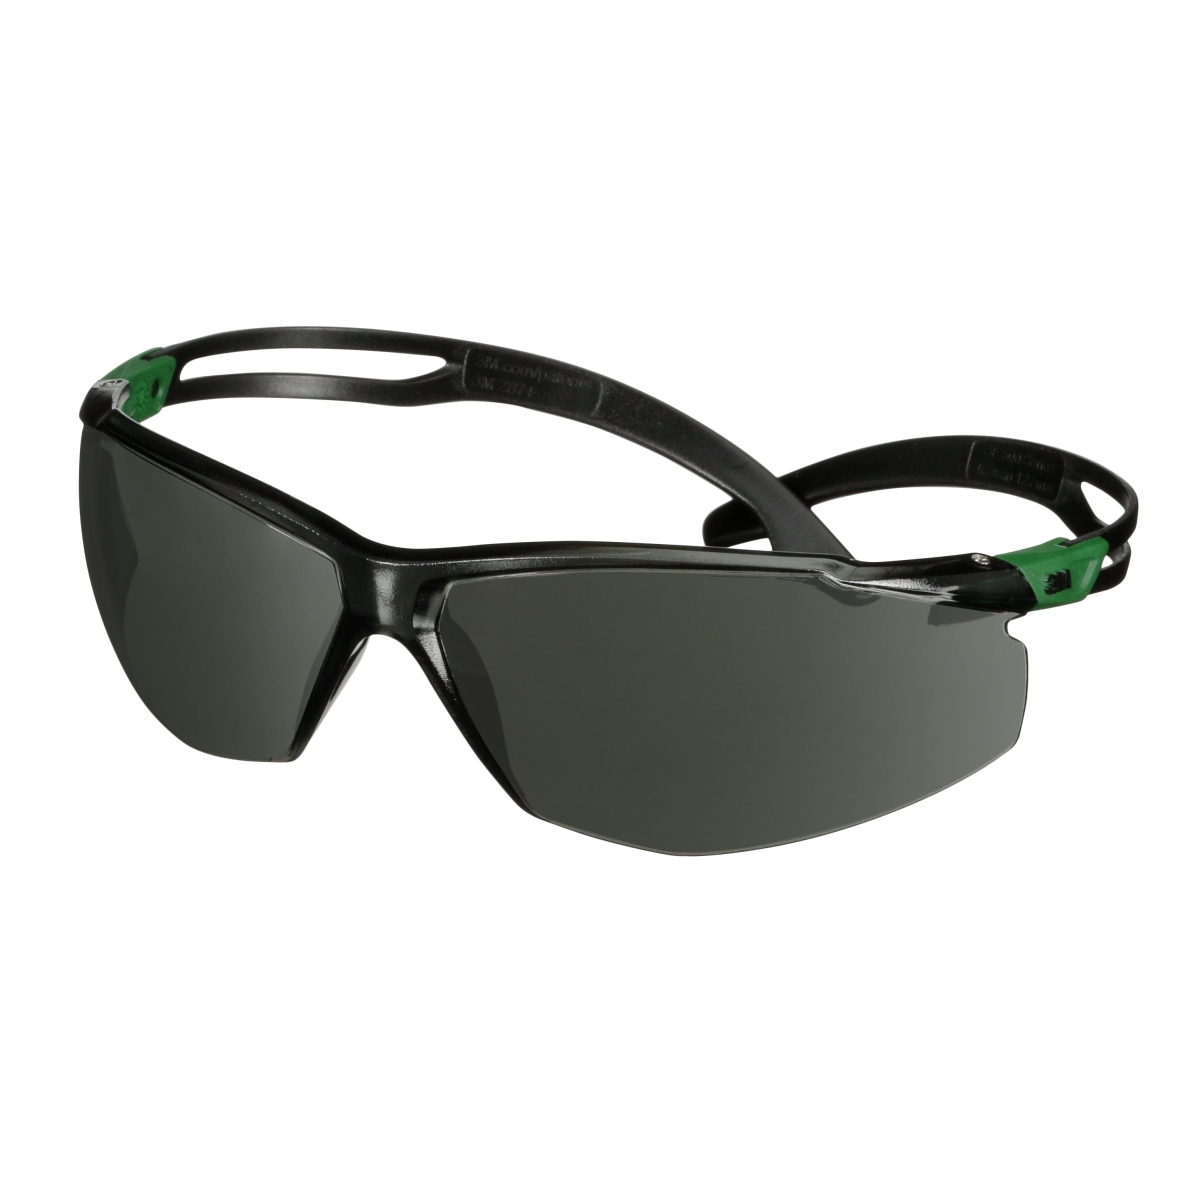 3M SecureFit 500 Schutzbrille, schwarz/grüne Bügel, Antikratz-Beschichtung+ (K), graue Scheibe mit Schutzstufe IR 3.0, SF530ASP-GRN